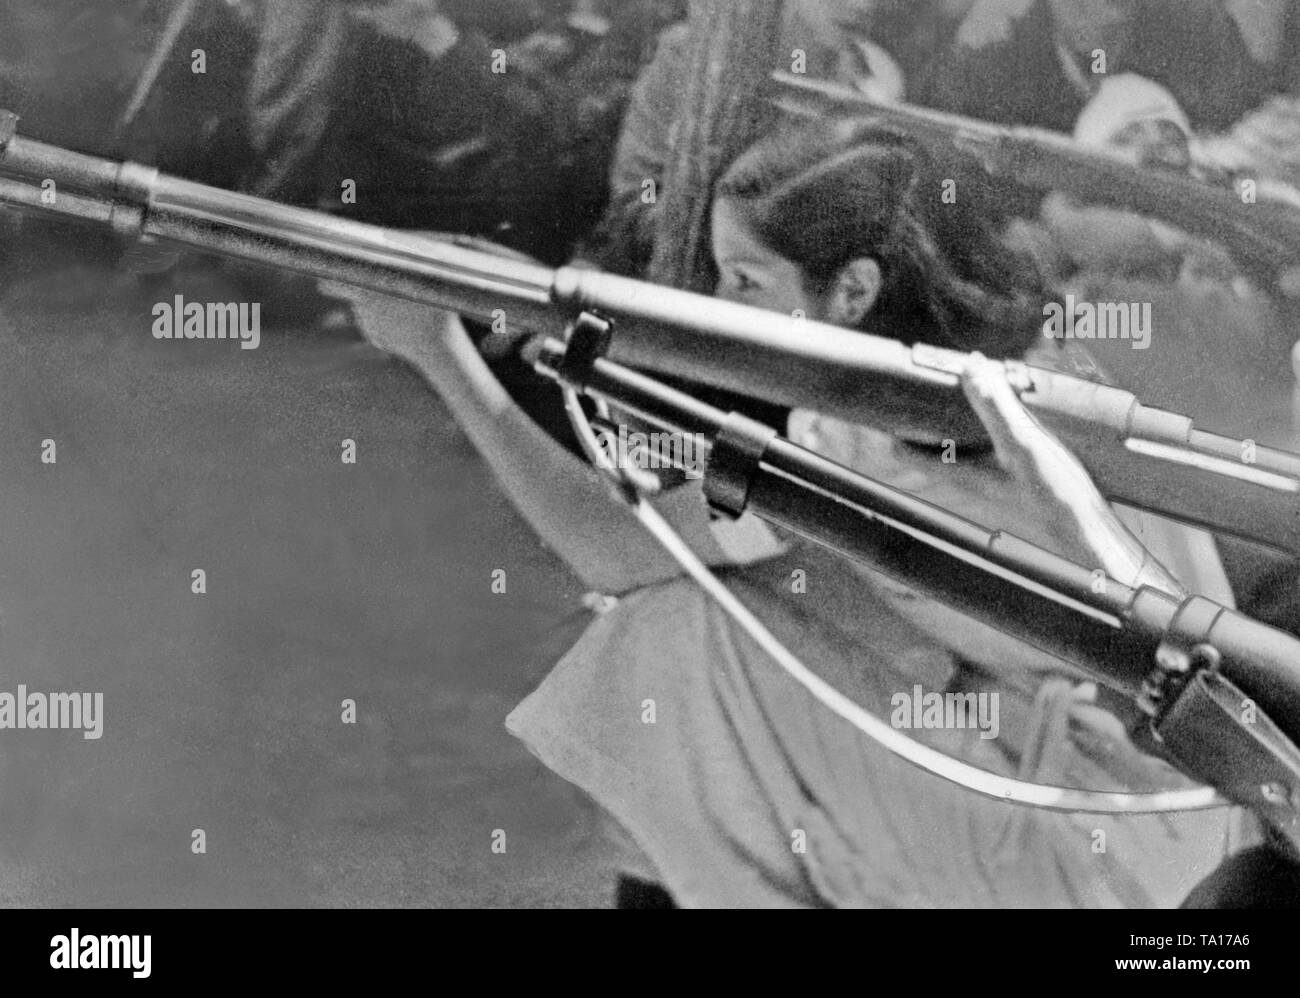 Foto von zwei Fässer von einem Deutschen Gewehr 98, die bei der Aufnahme der Ausbildung im Spanischen Bürgerkrieg 1936. Im Hintergrund, ein republikanischer Milizionär. Stockfoto